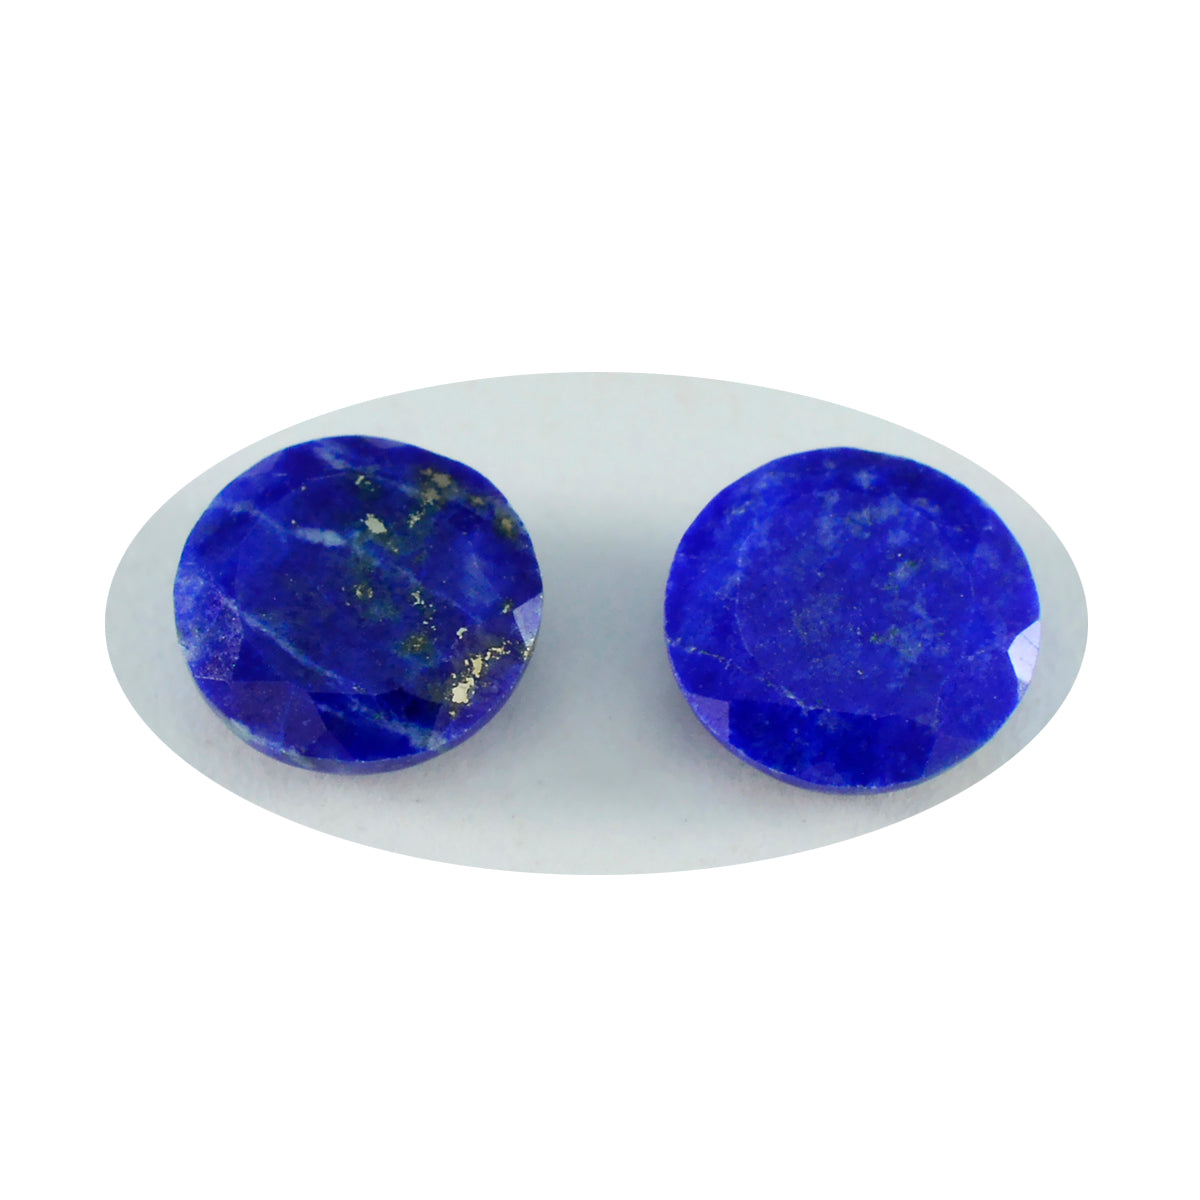 riyogems 1 pieza de lapislázuli azul genuino facetado 14x14 mm forma redonda hermosa piedra preciosa de calidad